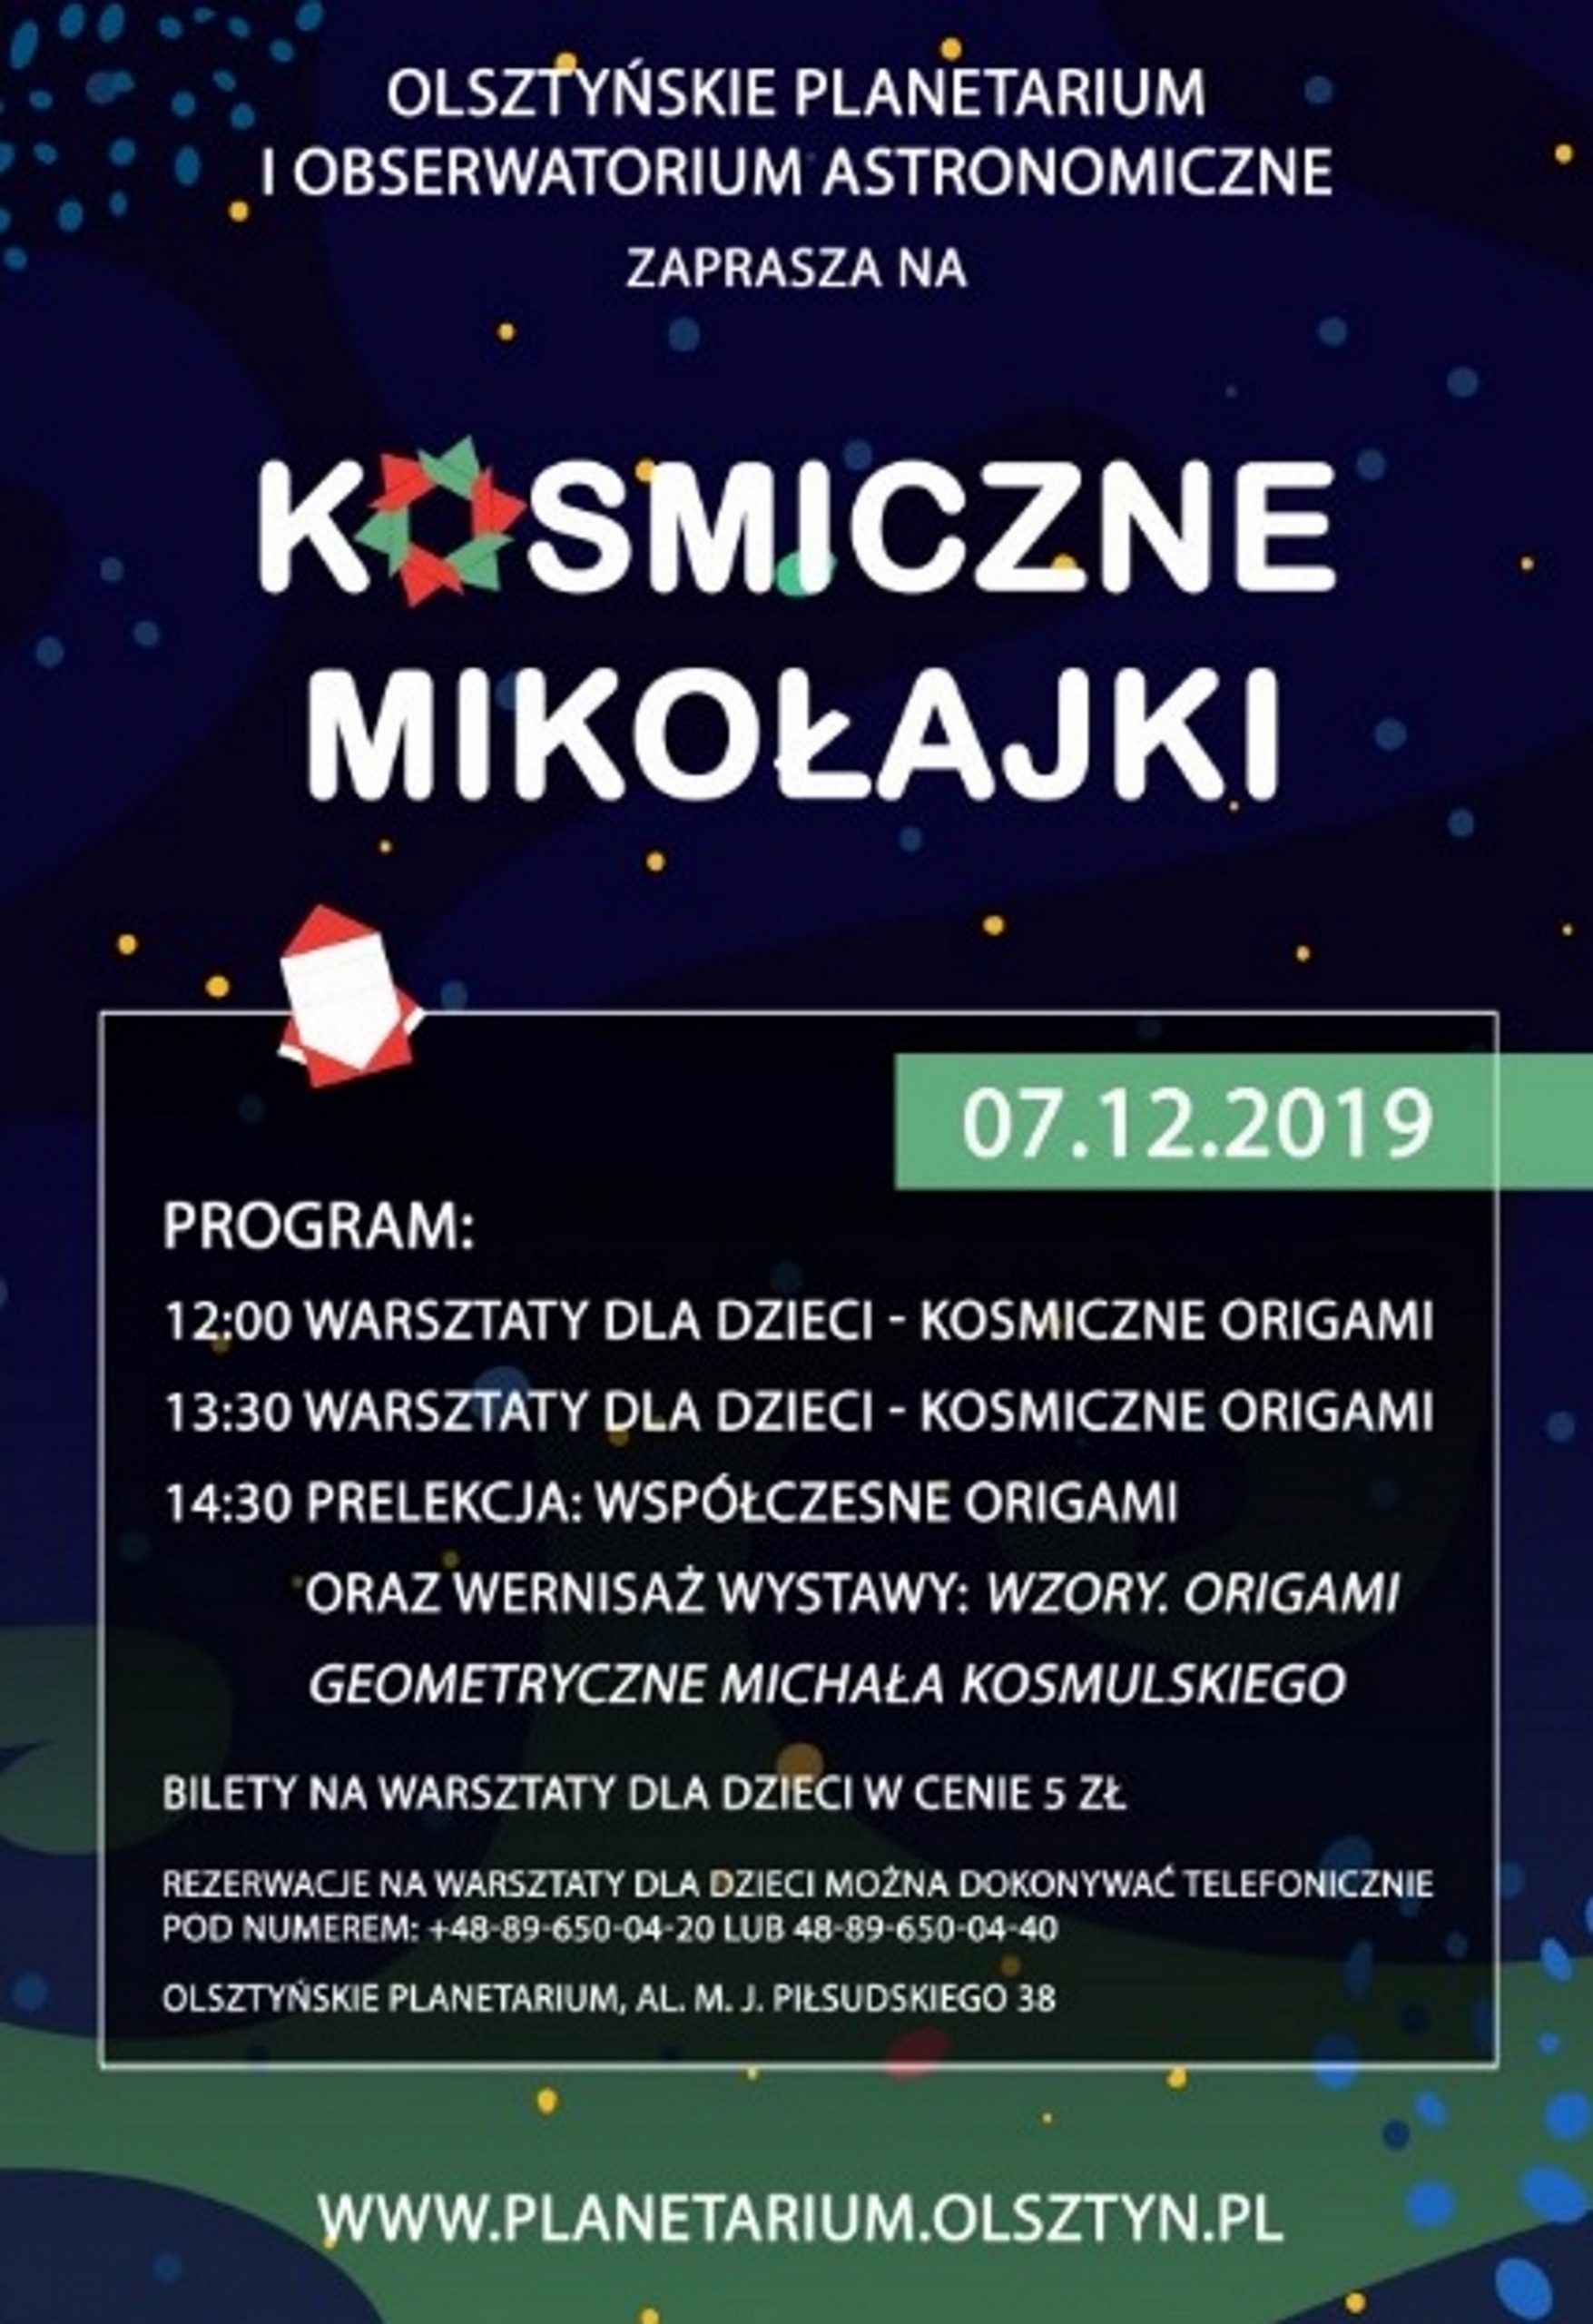 Plakat zapraszający na spotkanie do Olsztyńskiego Planetarium na Kosmiczne Mikołajki. Na plakacie przedstawiony program imprezy.  